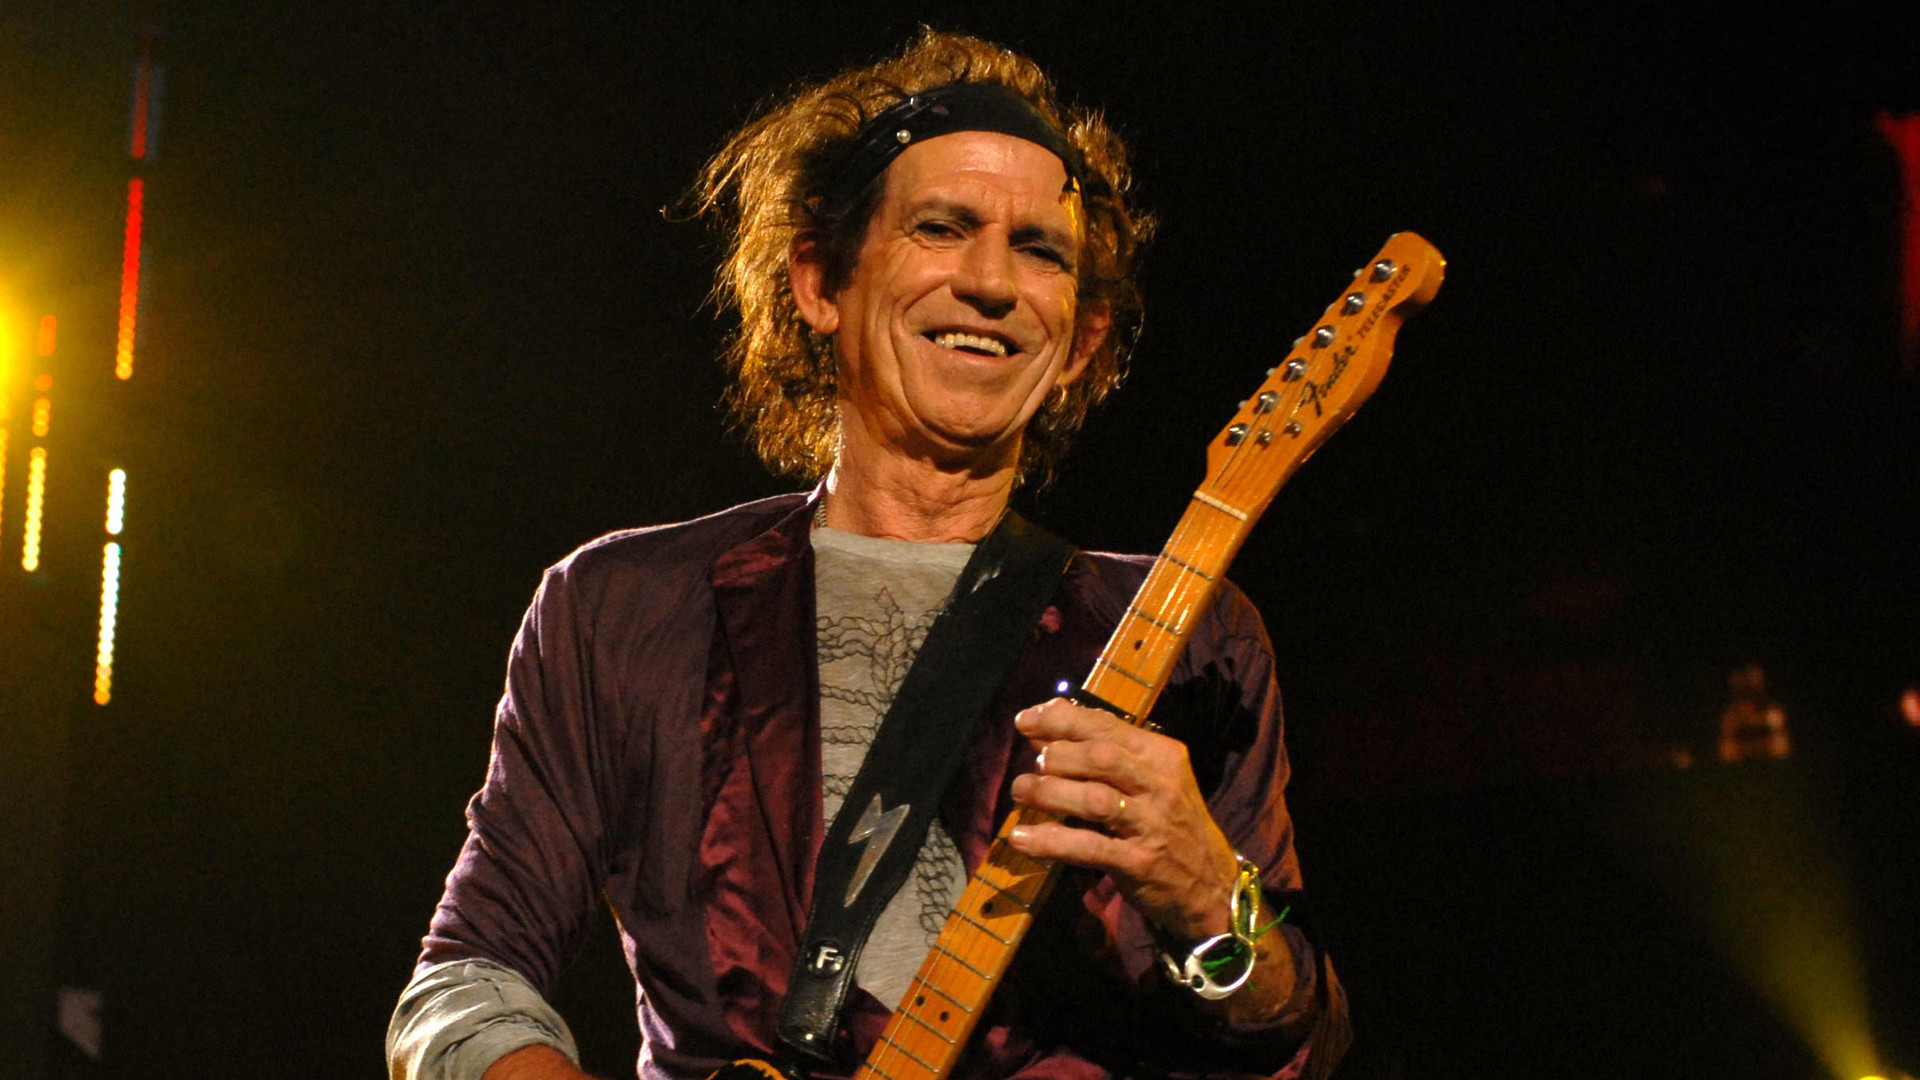 Keith Richards spielt Gitarre auf der Bühne und lacht